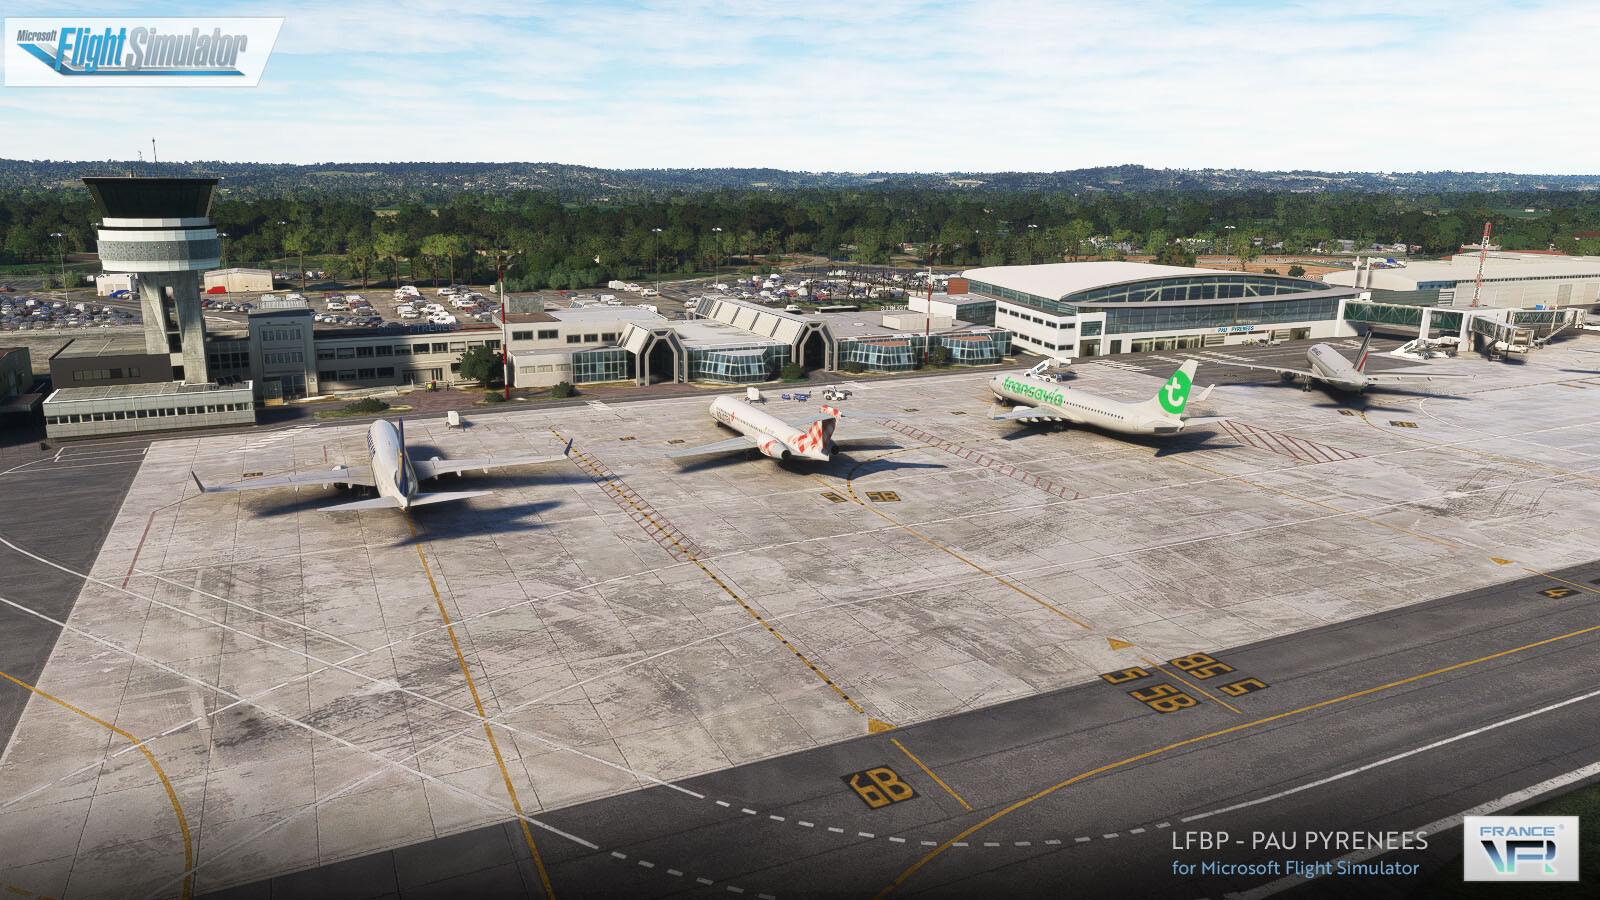 LFBP Pau Pyrenees Airport - Microsoft Flight Simulator - Orbx